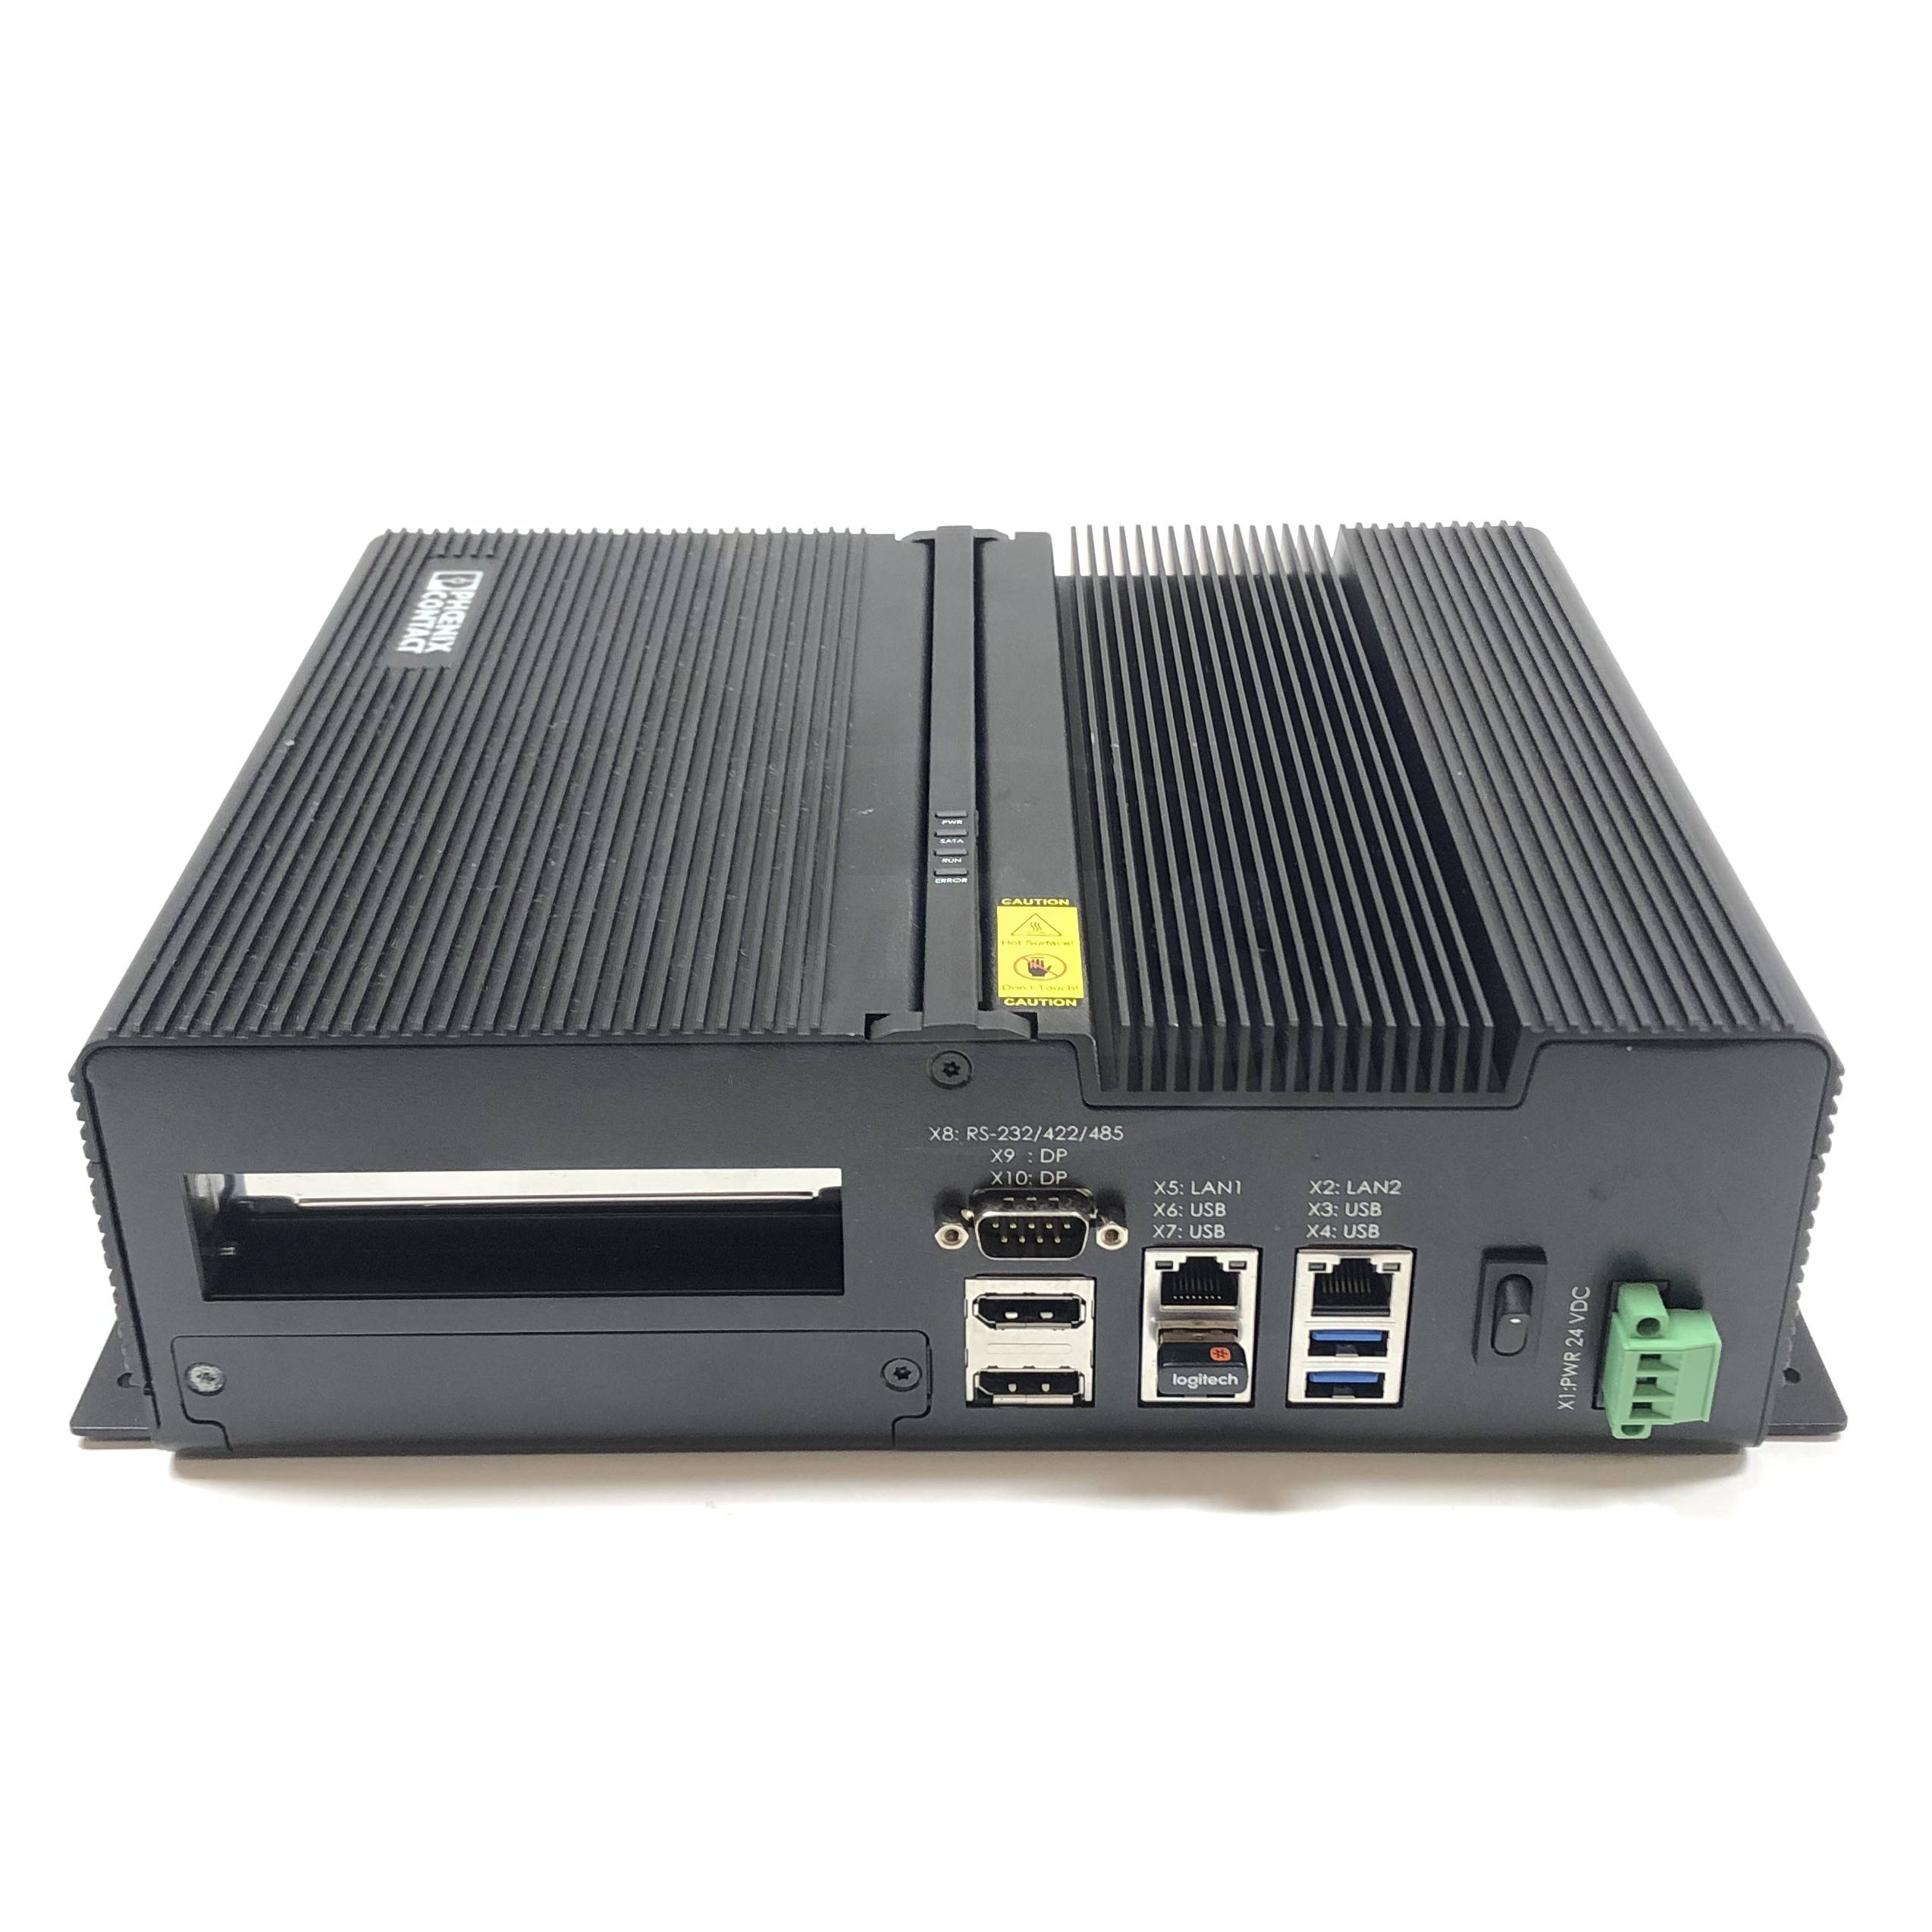 2400333 Phoenix Contact VL2 BPX 7000 Box PC, 150GB Intel SSD, 8GB, i5-4300U 3